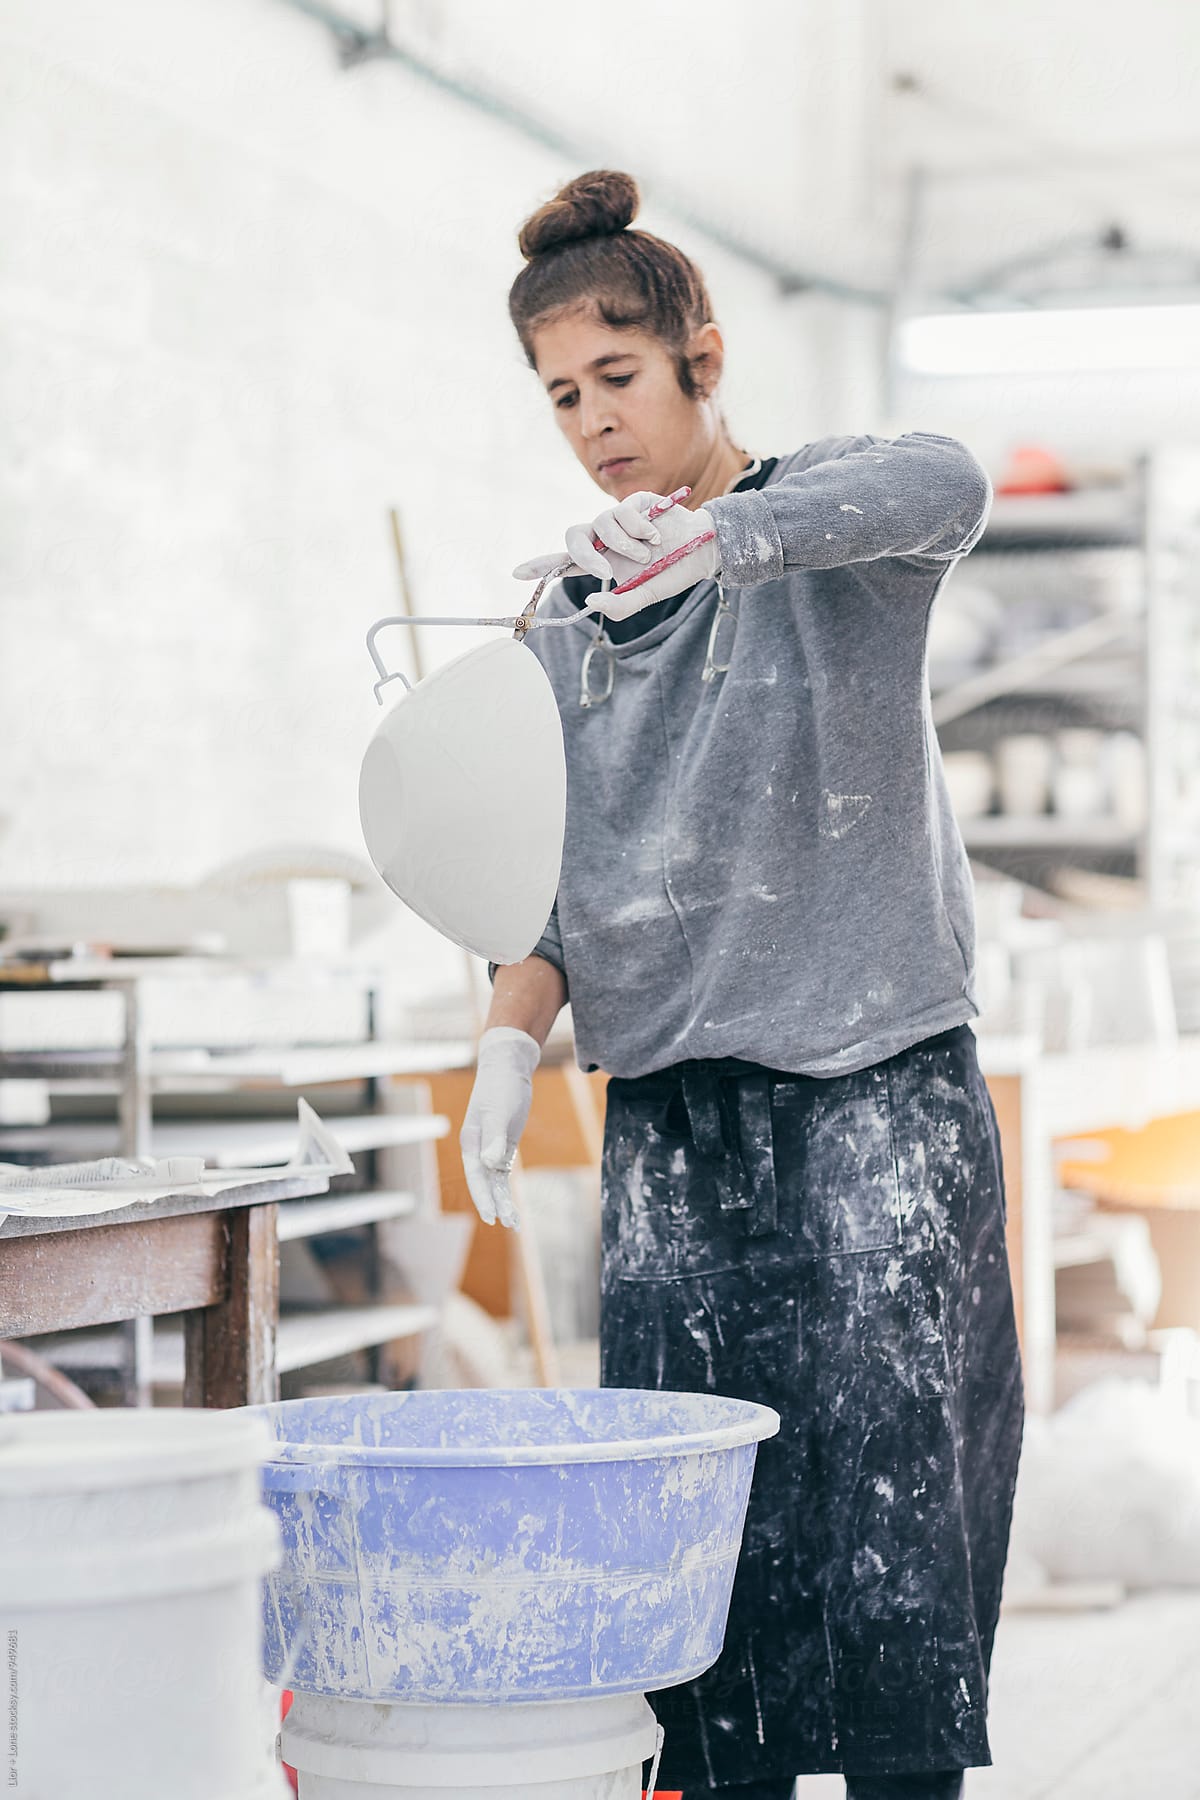 Female ceramic artist glazing a bowl in her studio